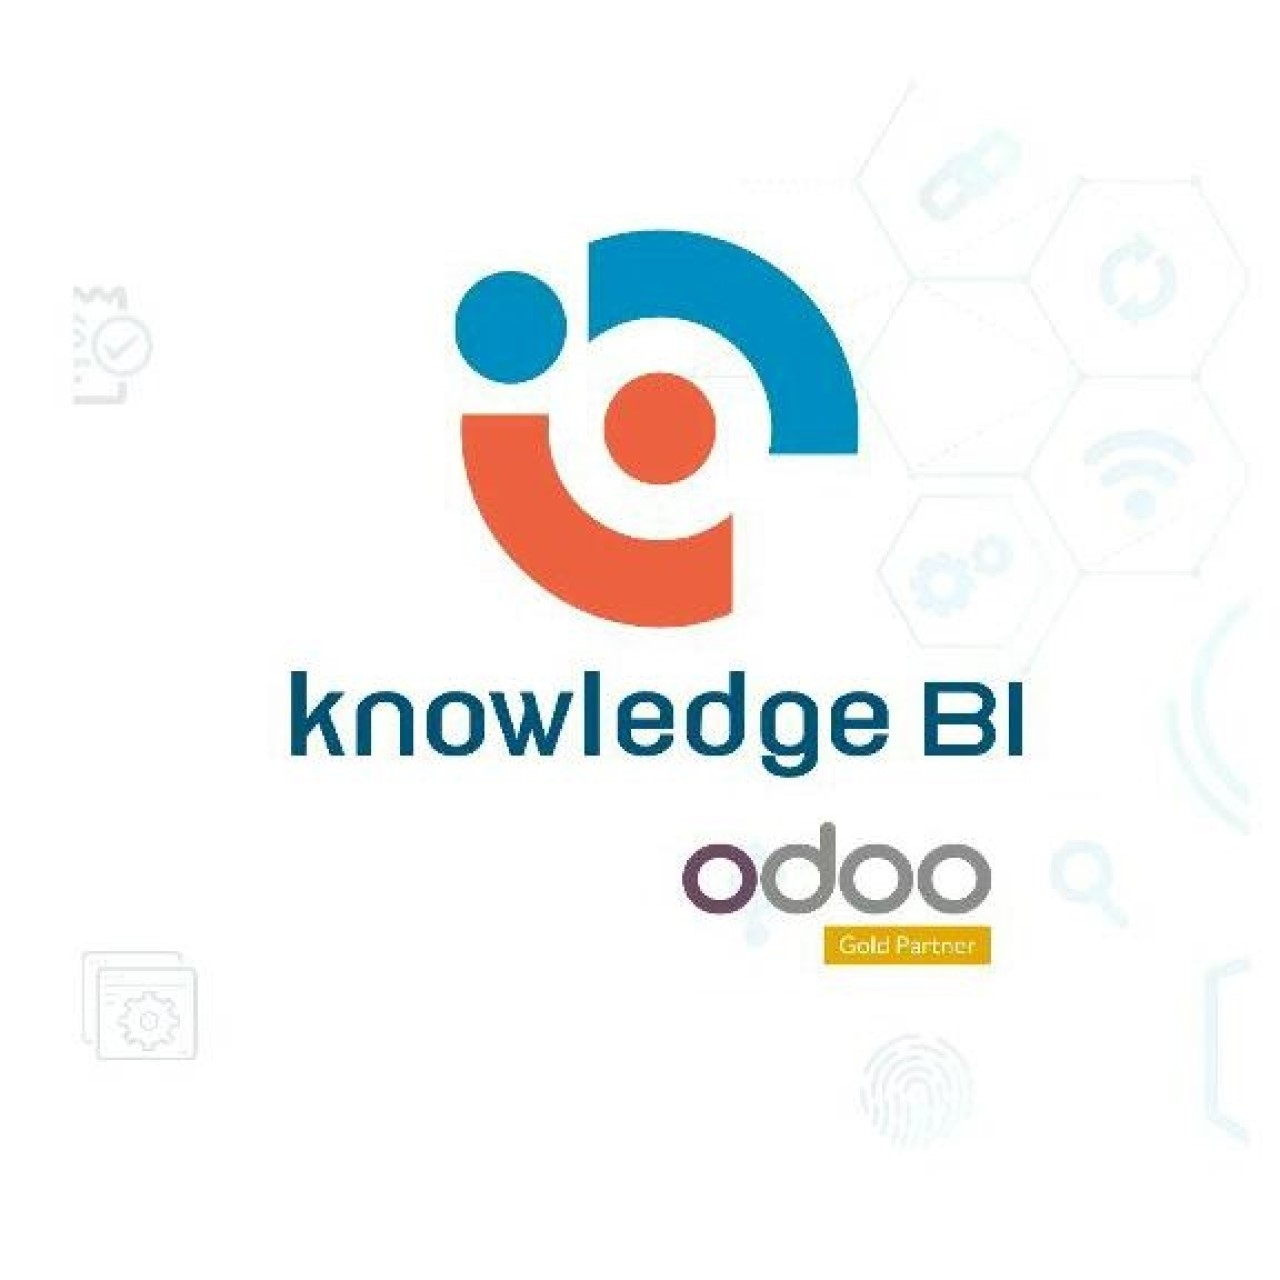 Knowledge BI